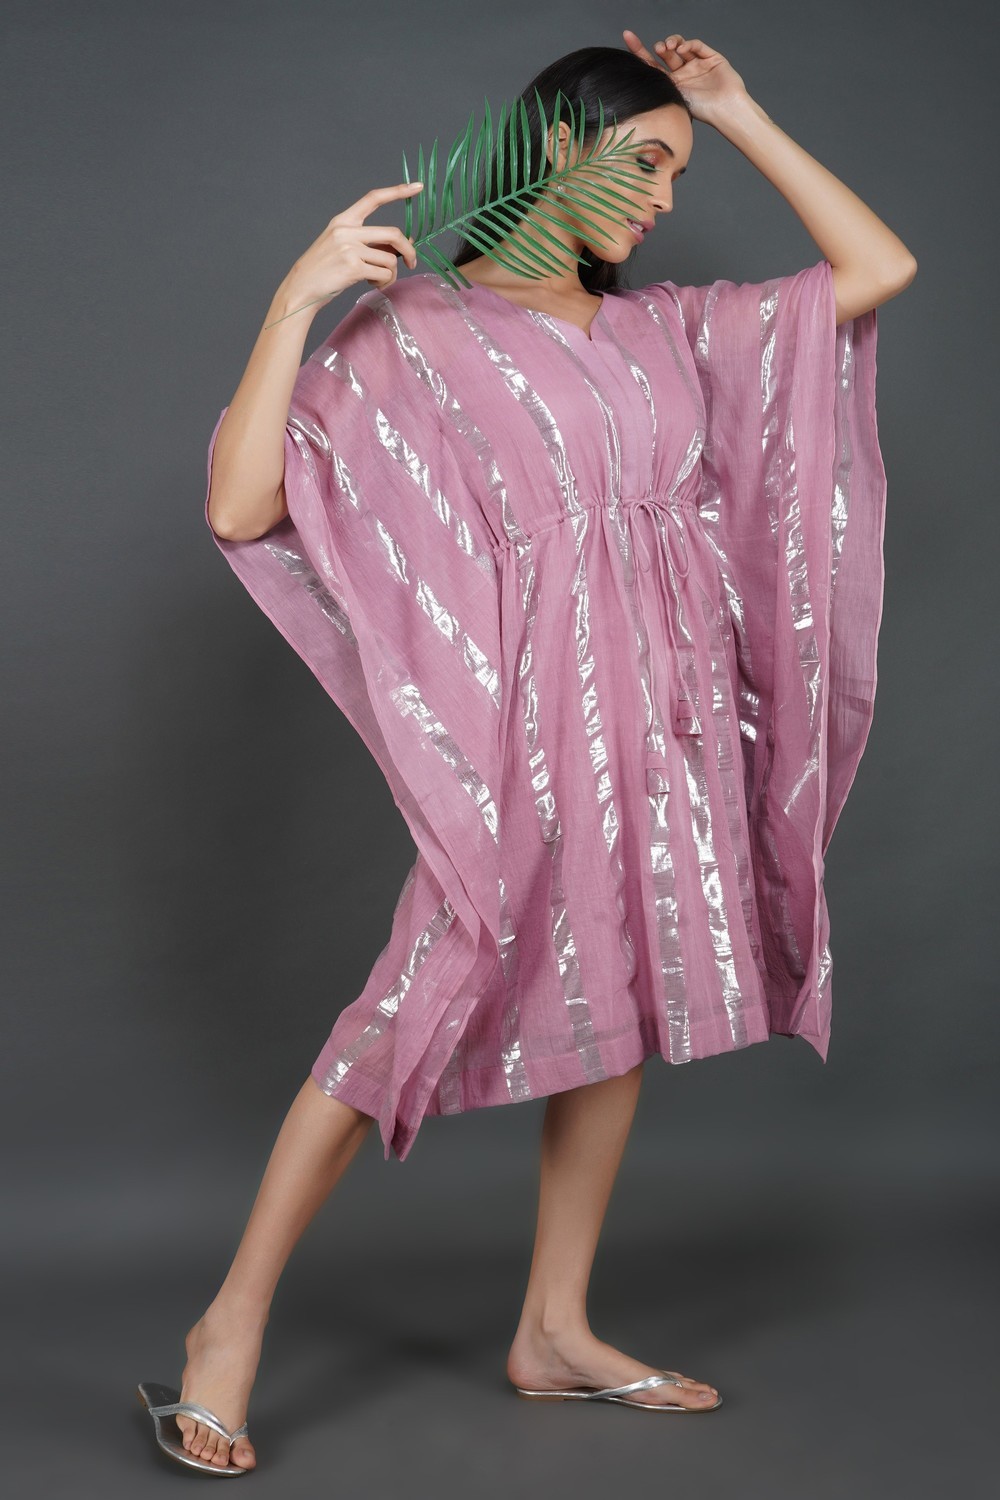 LASTINCH Onion Pink Kaftan Dress With Slip